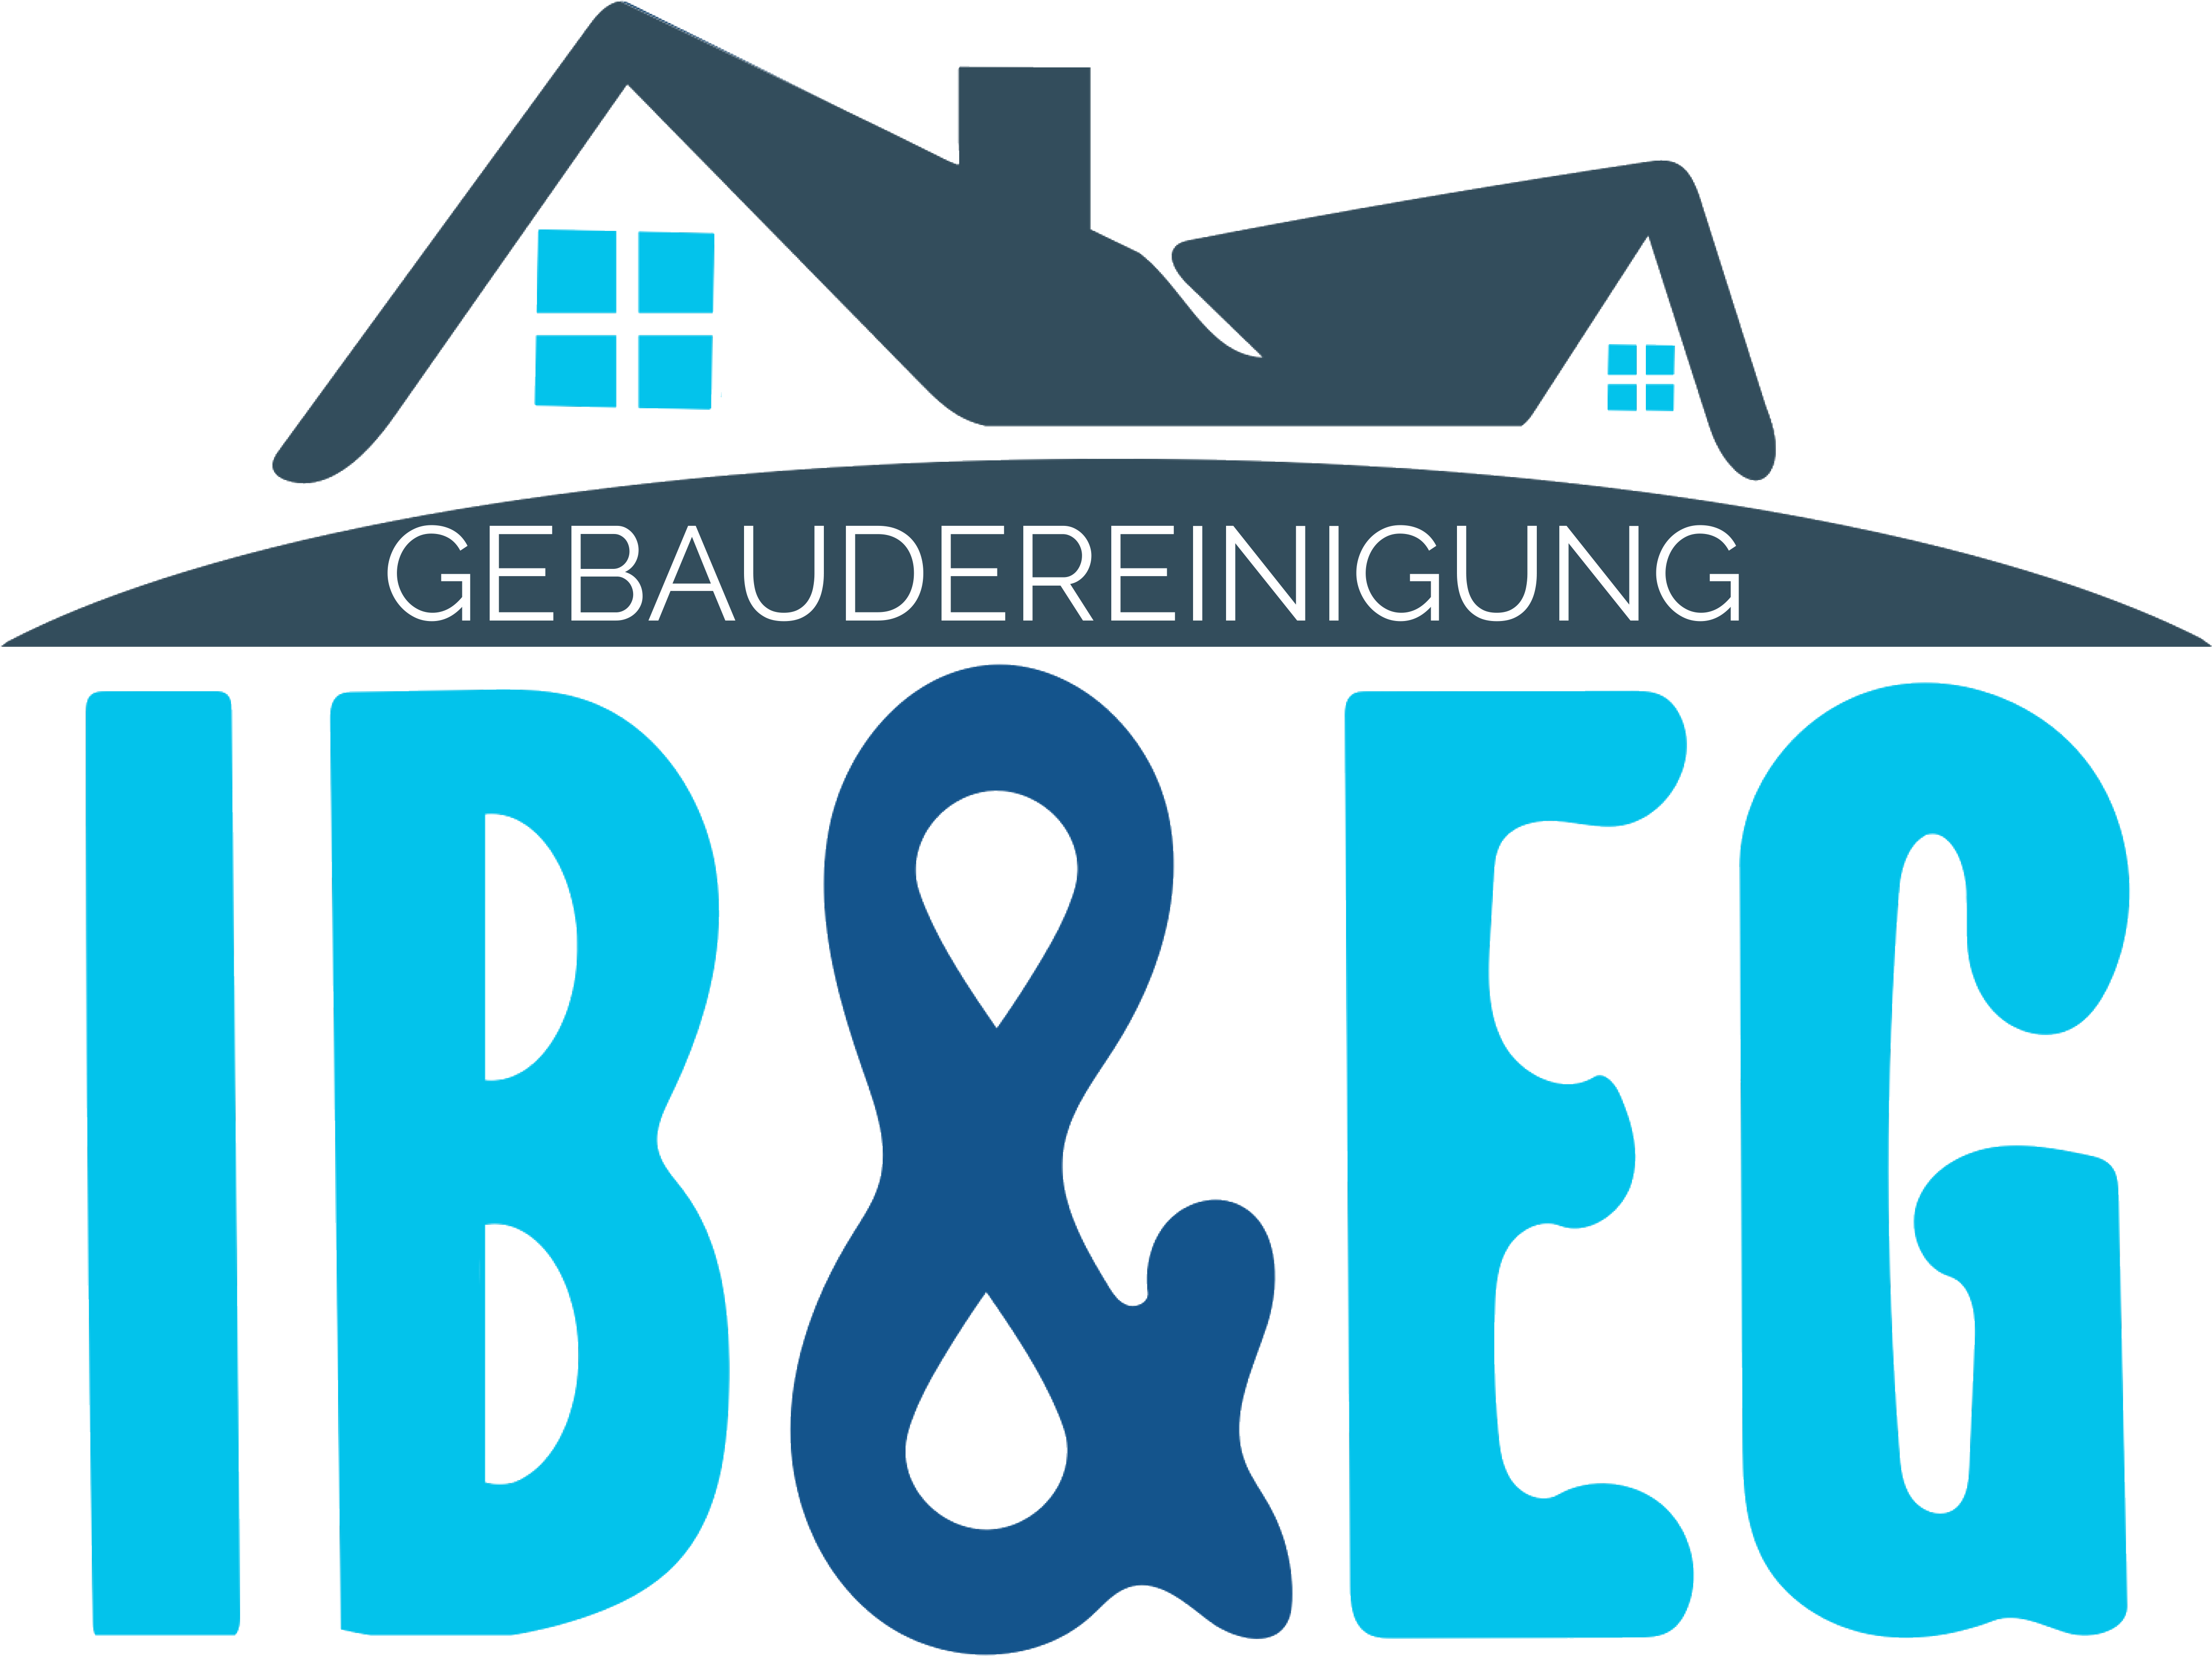 Gebäudereinigung IB & EG